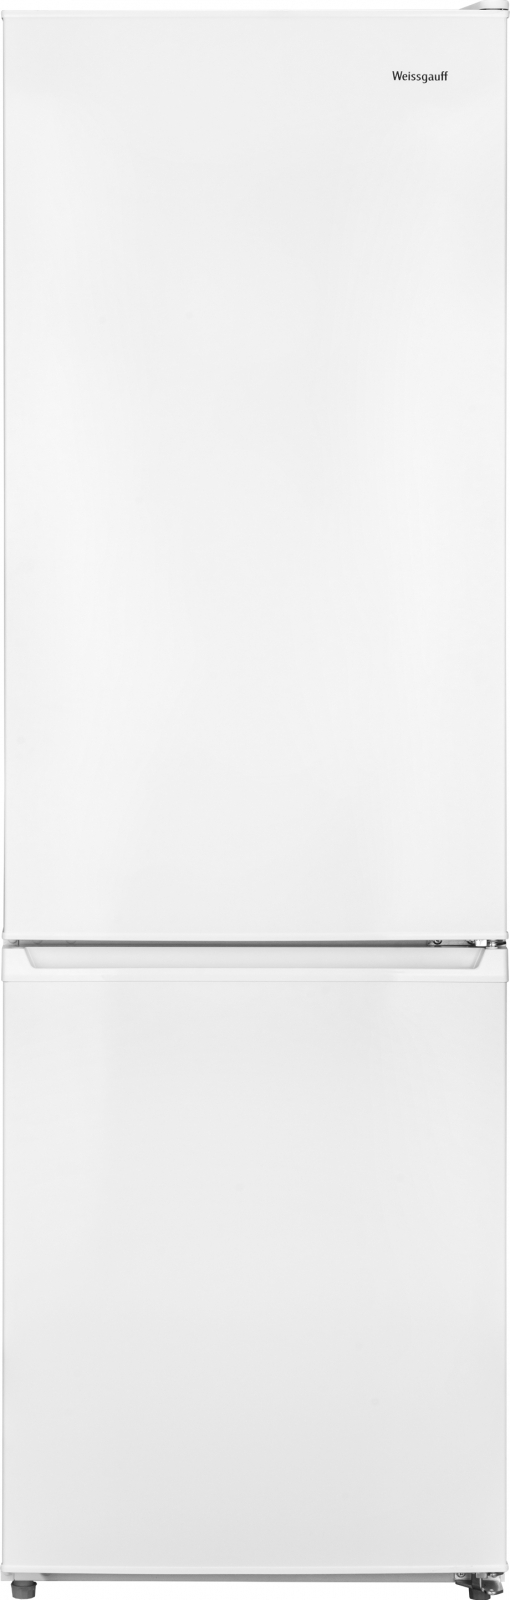 фото Холодильник weissgauff wrk 190 w lowfrost белый